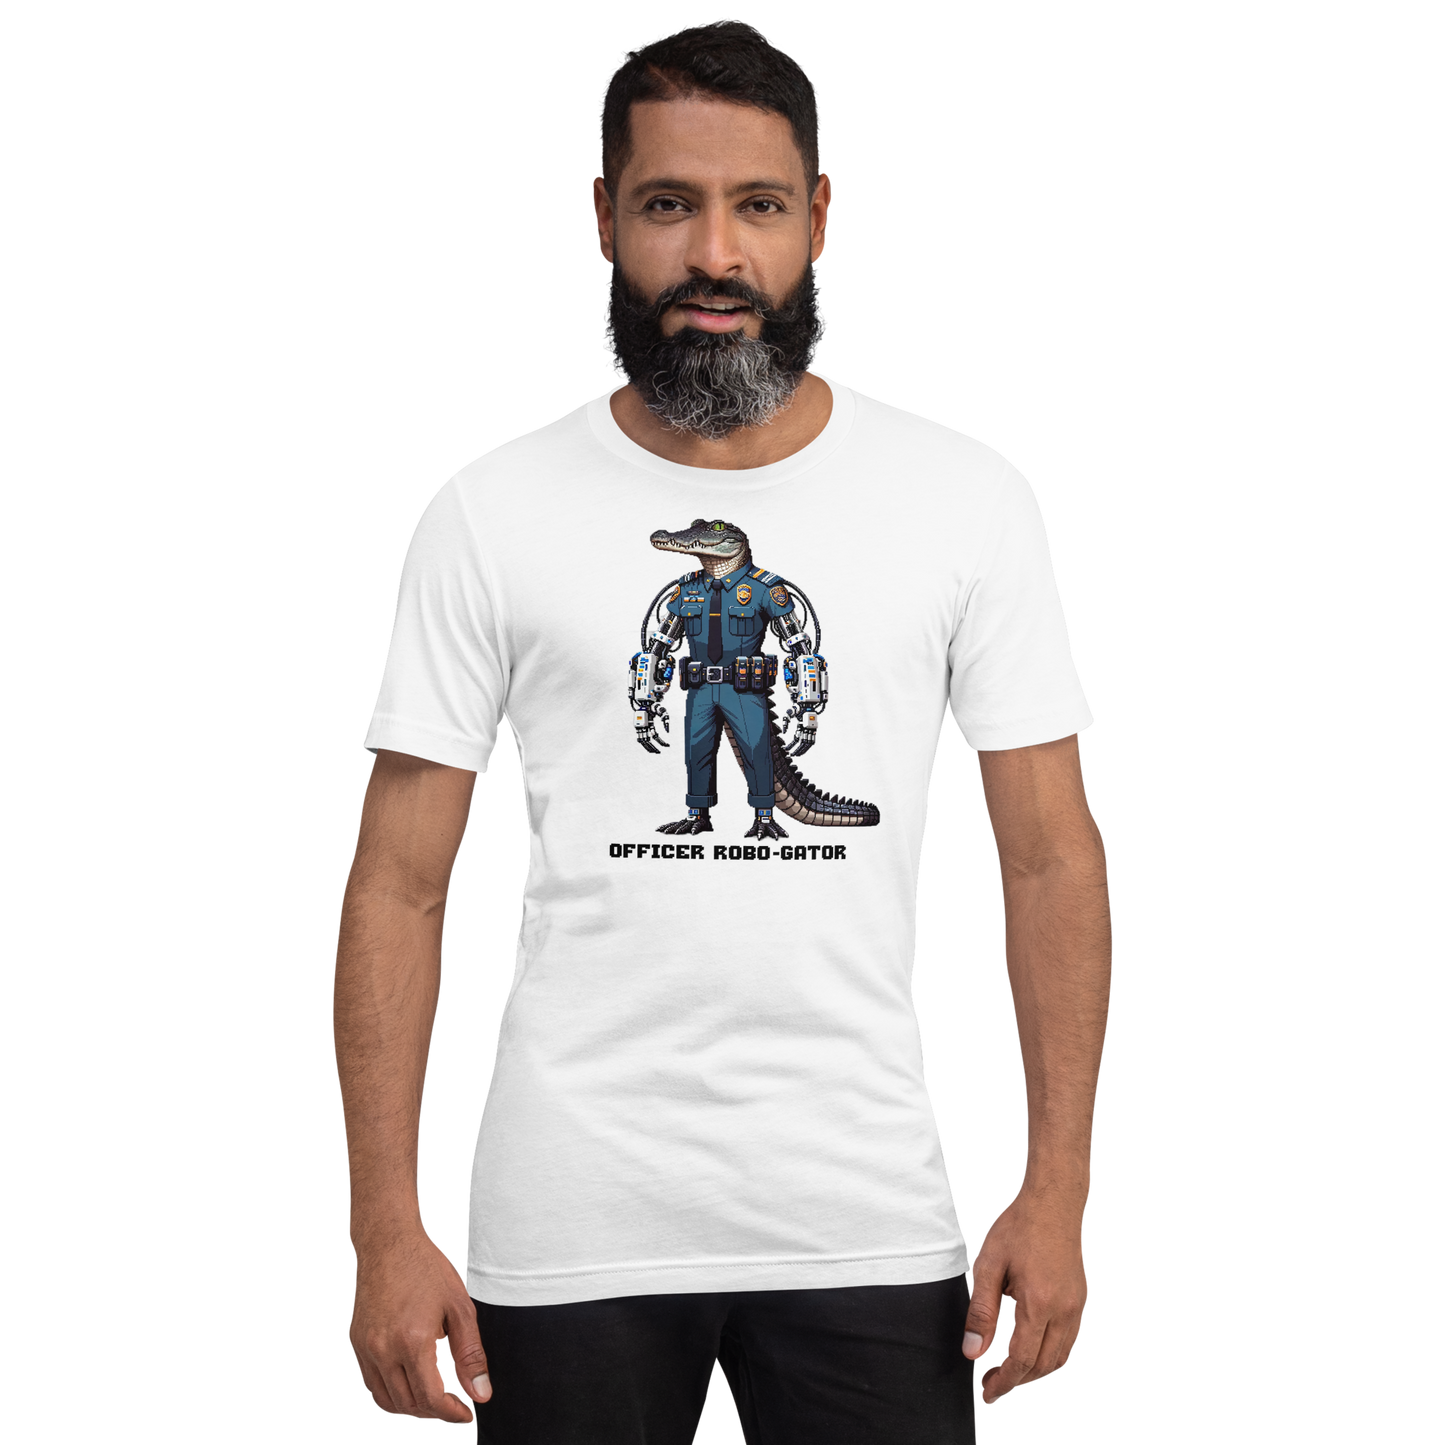 "Officer Robo-Gator" Unisex Shirt w/ Text